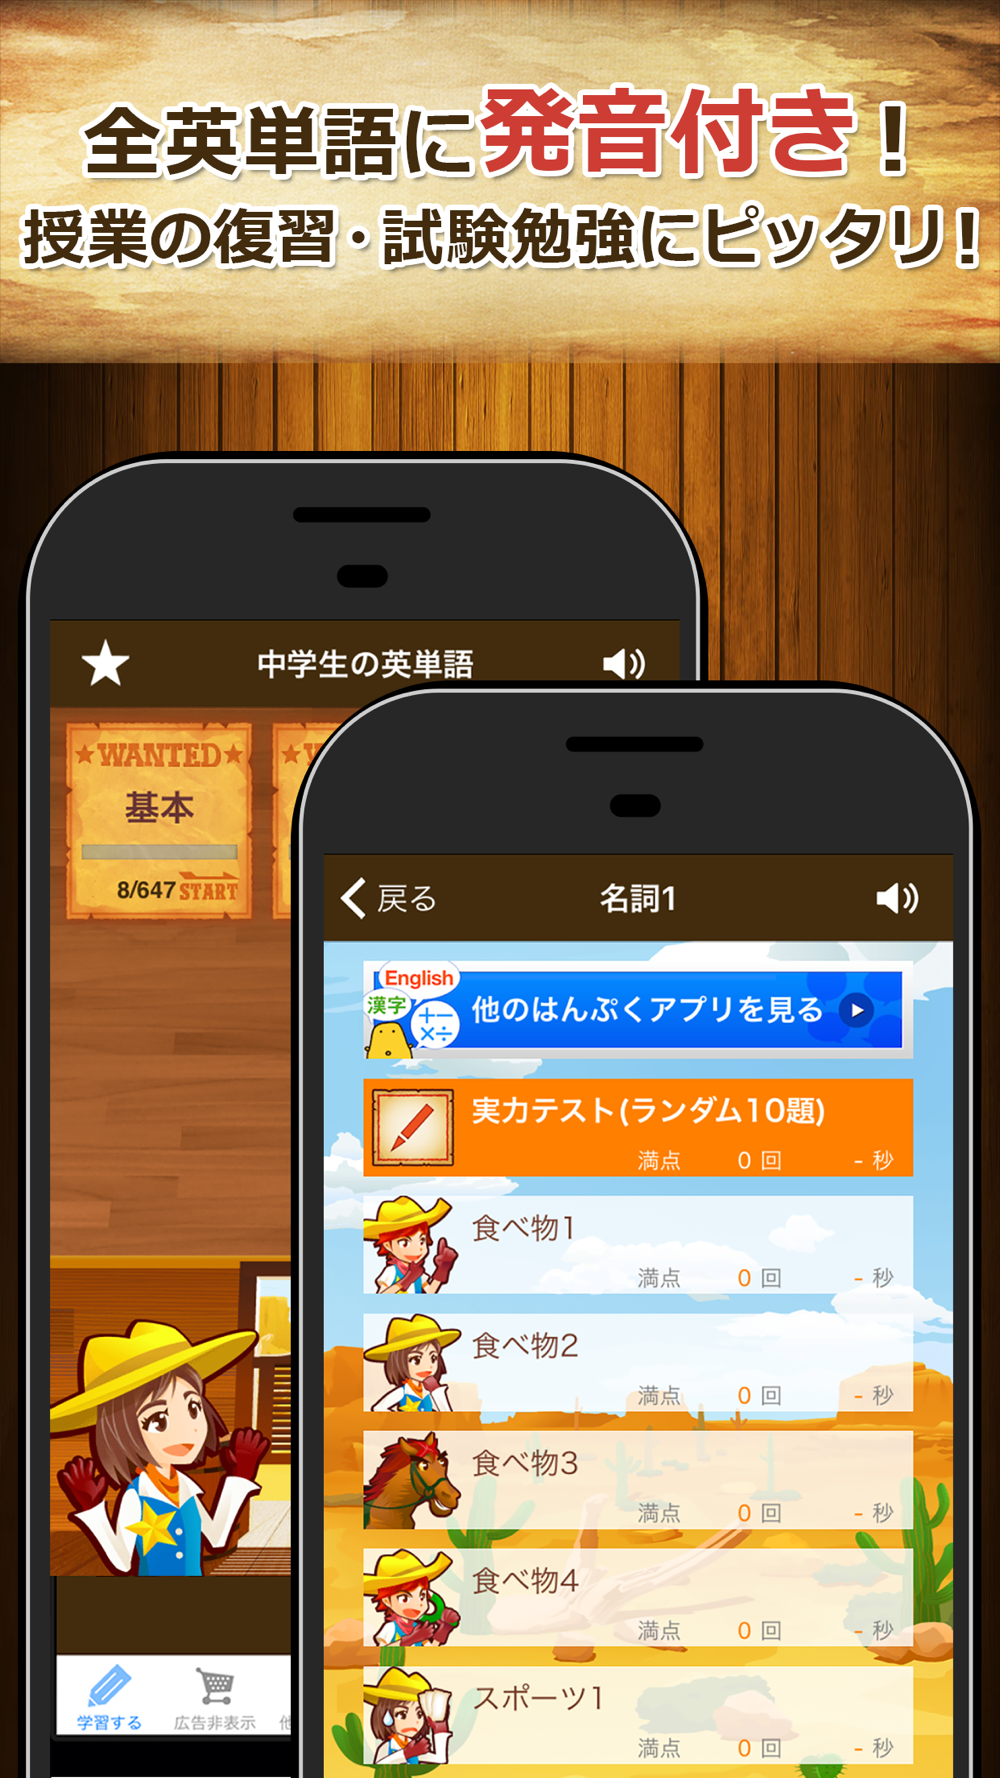 中学生の英単語00 中学英語よく出る英単語勉強アプリ Free Download App For Iphone Steprimo Com